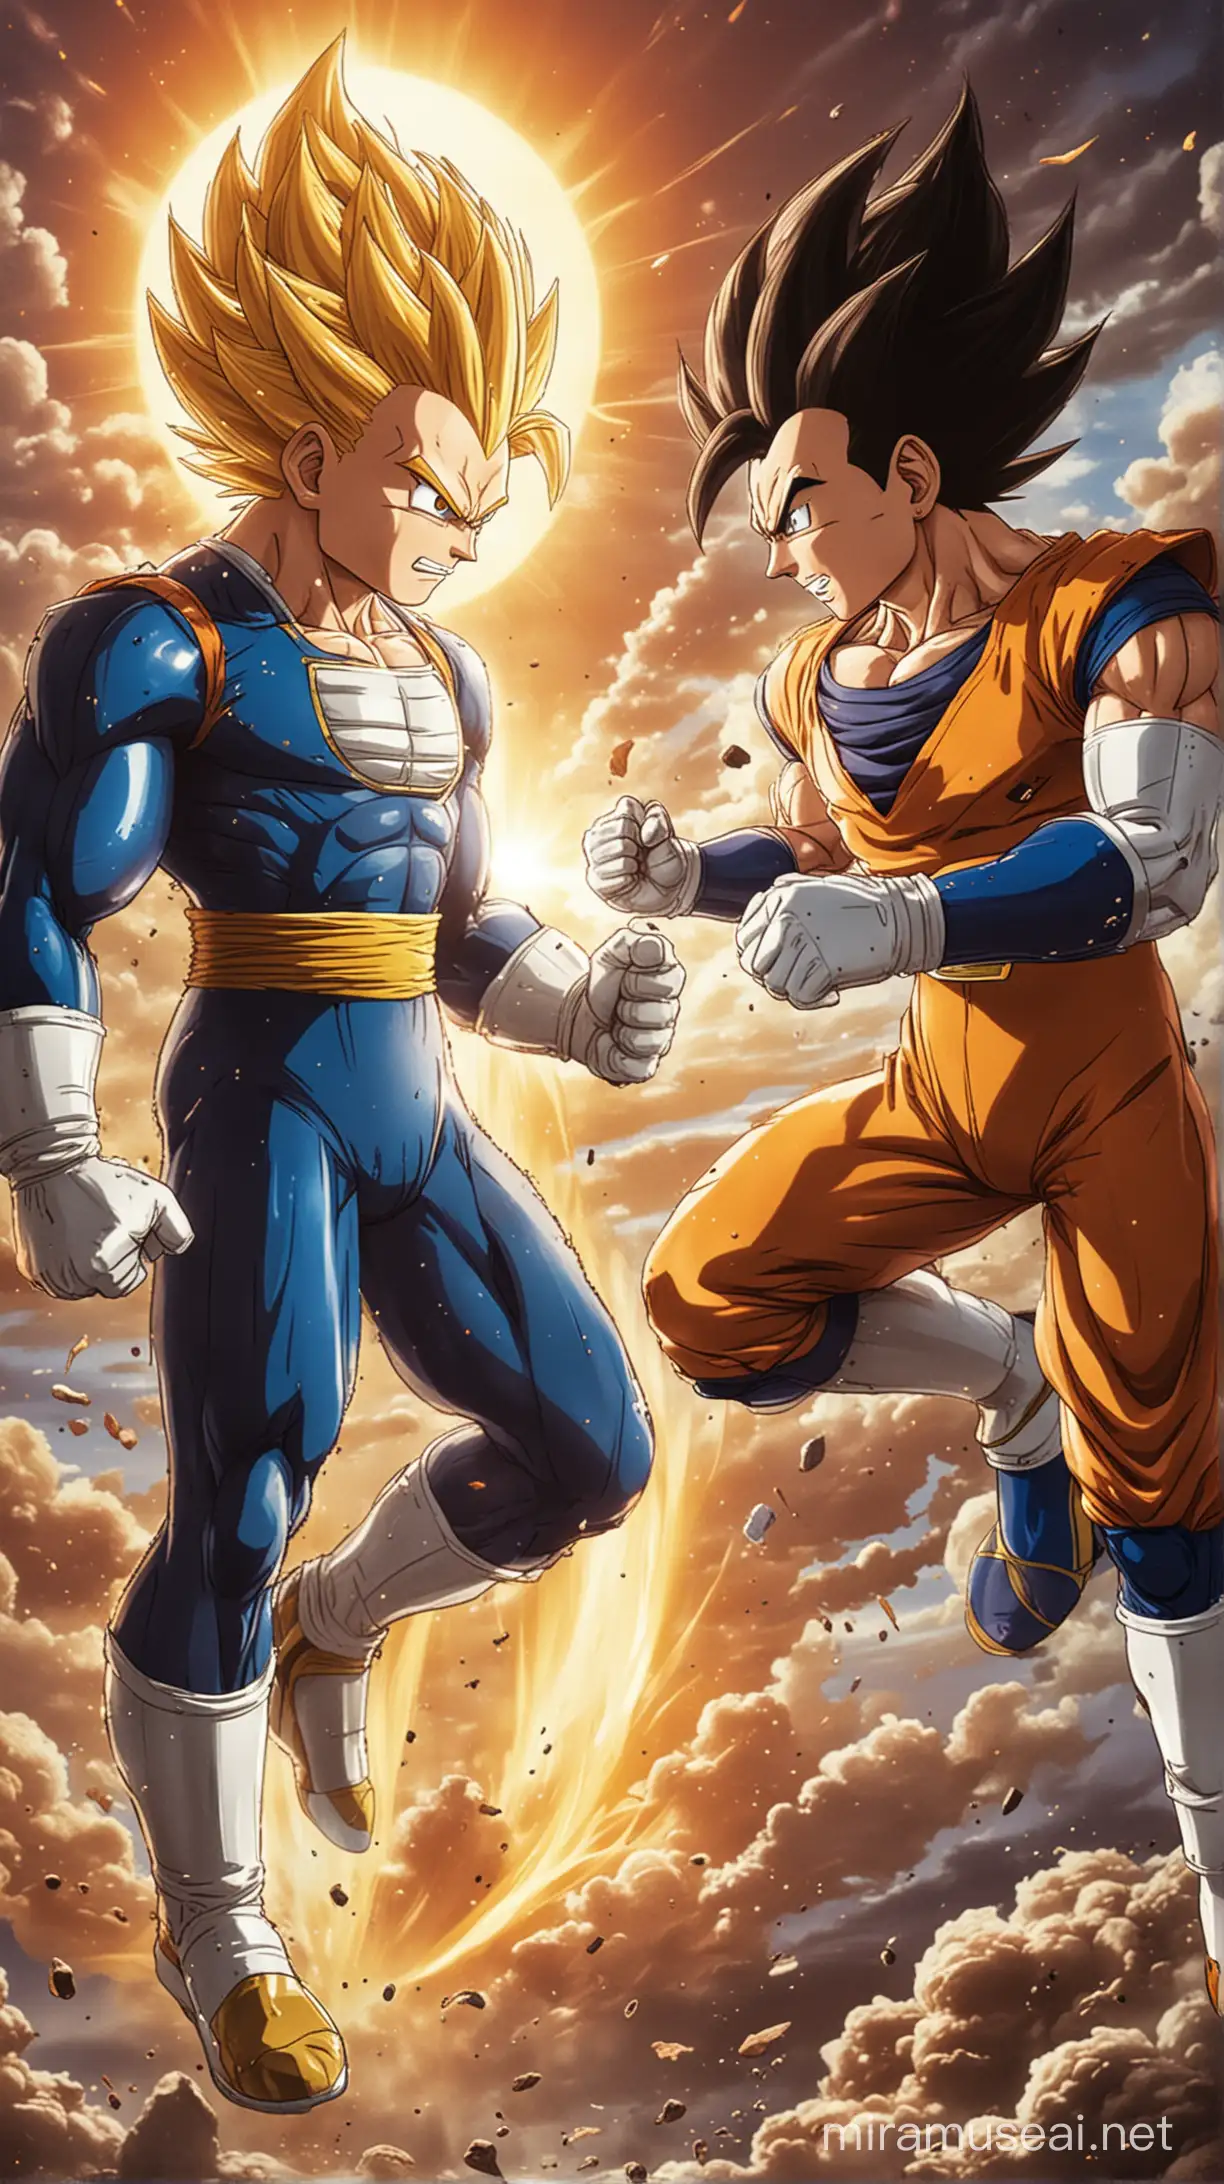 Epic Battle Goku vs Vegeta Dragon Ball Z Series Fan Art